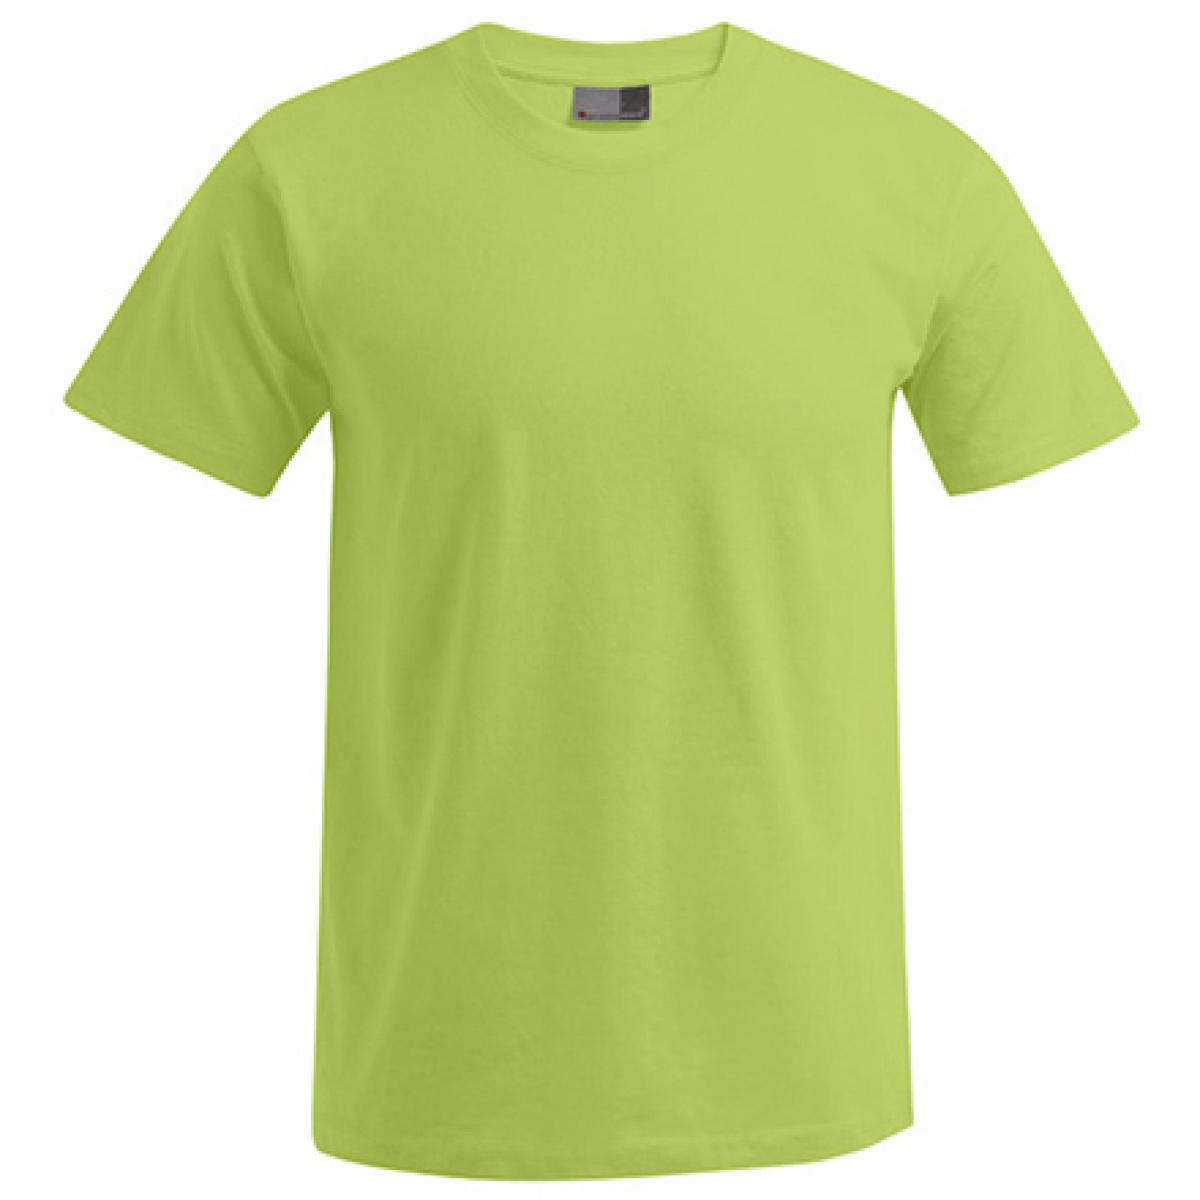 Hersteller: Promodoro Herstellernummer: 3000/3099 Artikelbezeichnung: Men´s Premium Herren T-Shirt - bis 5XL Farbe: Wild Lime